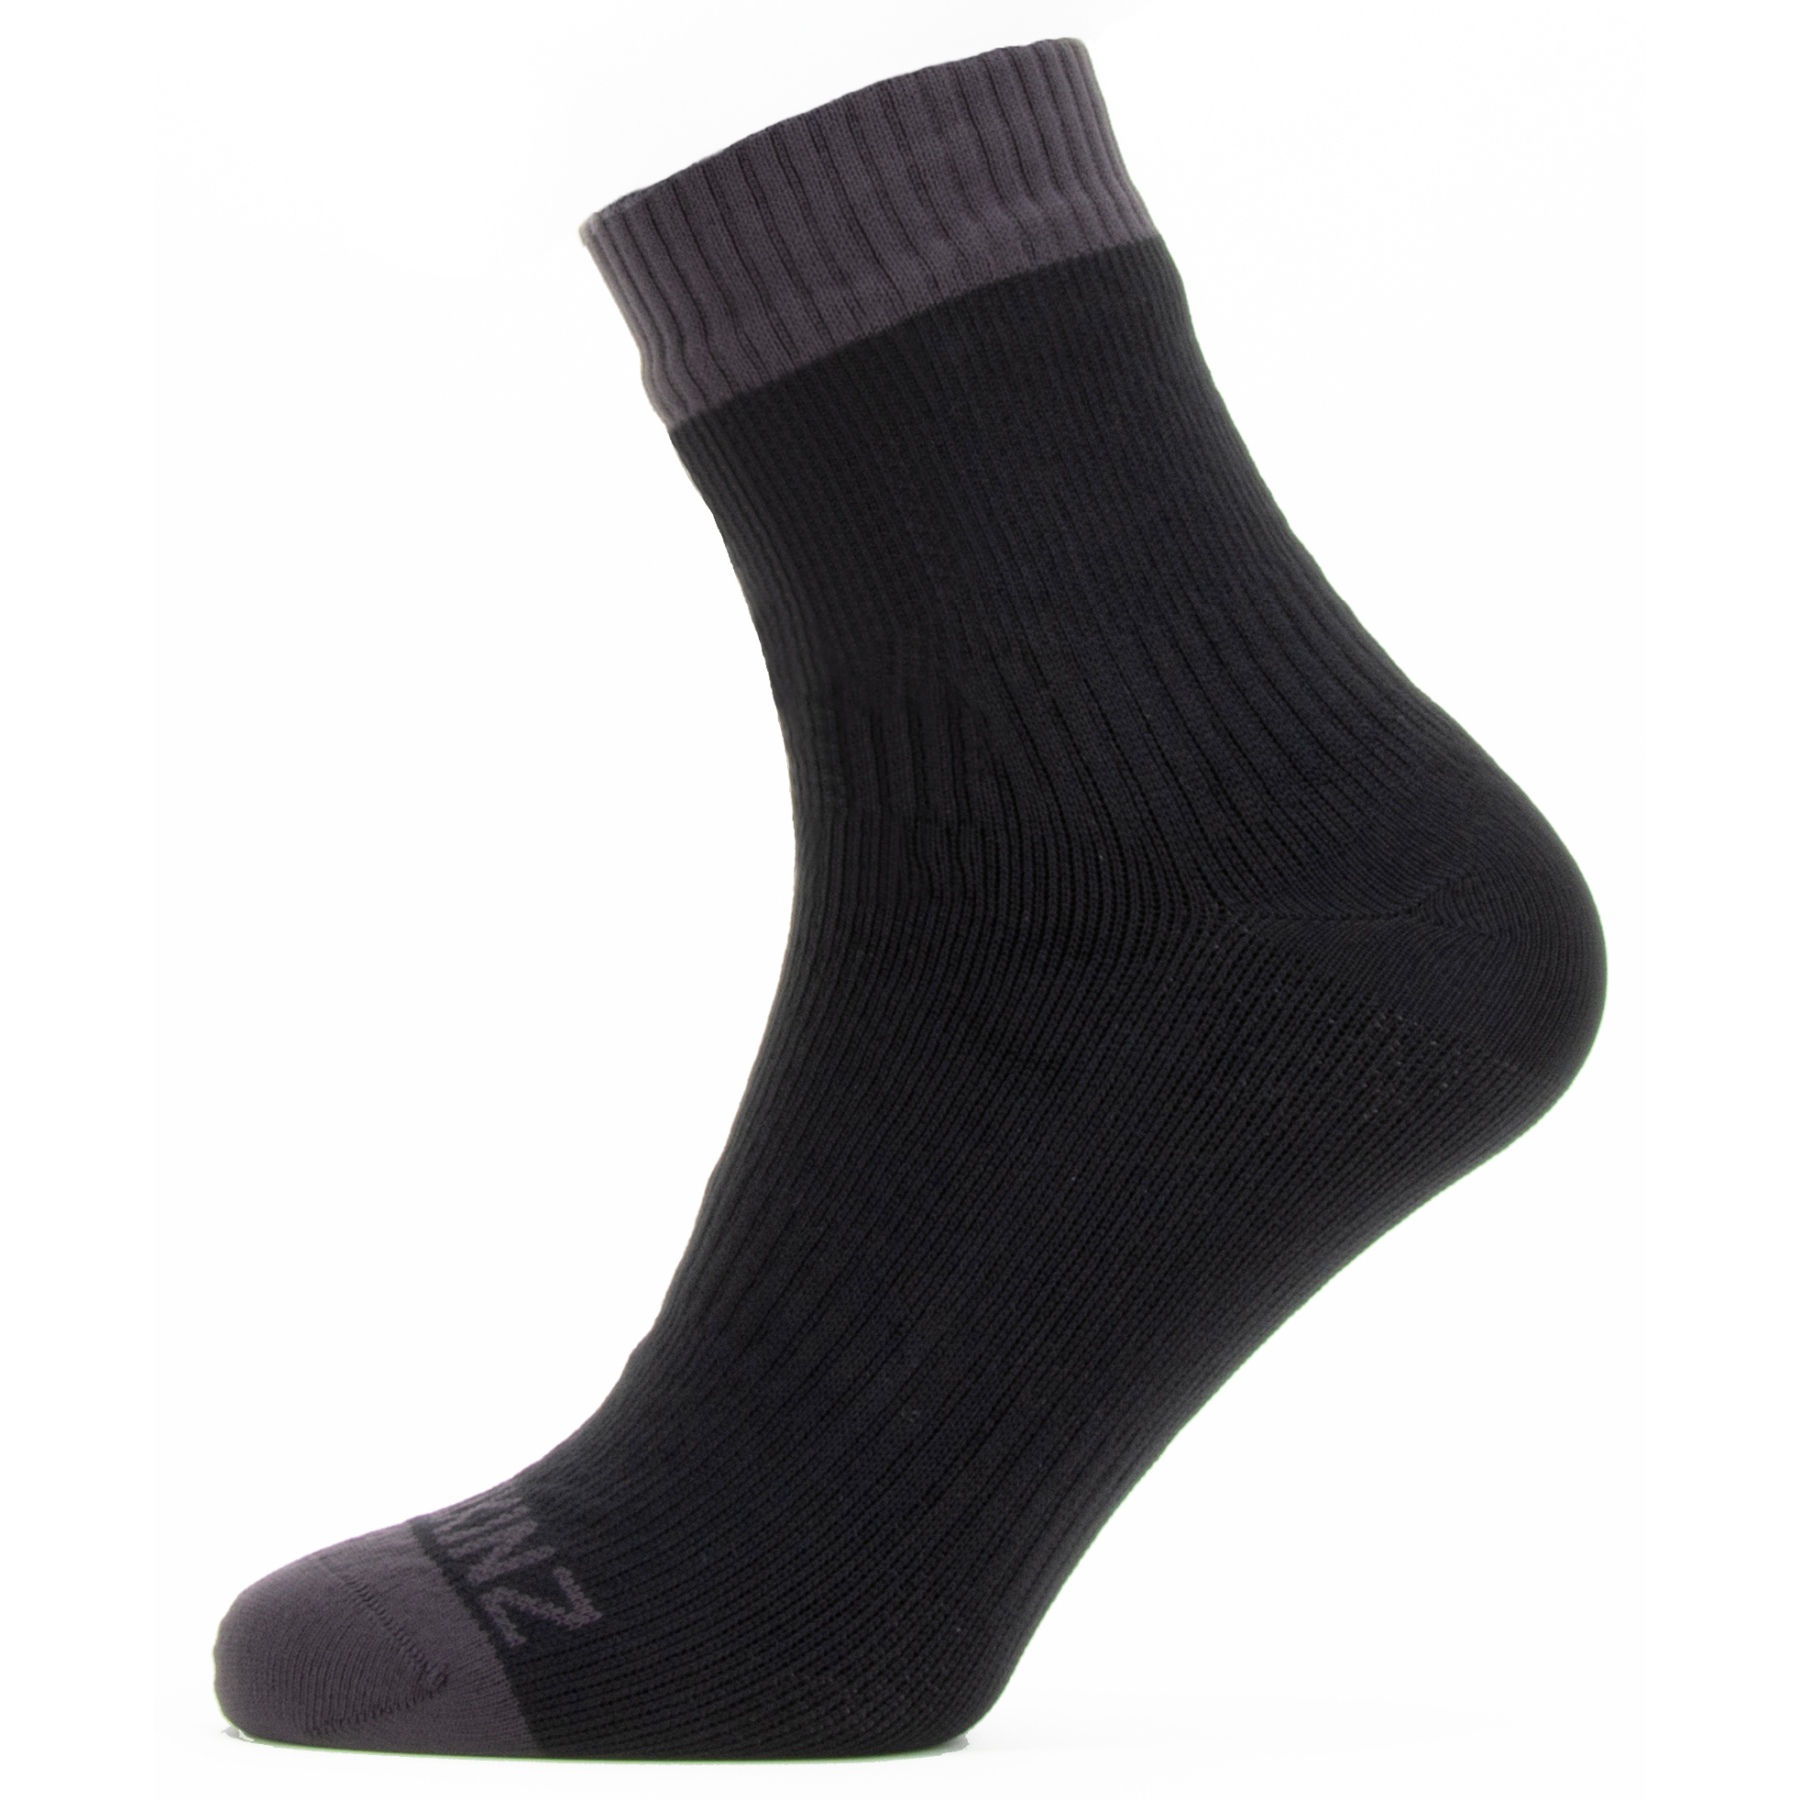 Productfoto van SealSkinz Wretham Waterdichte Enkellange Sokken Voor Warm Weer - Zwart/Grijs